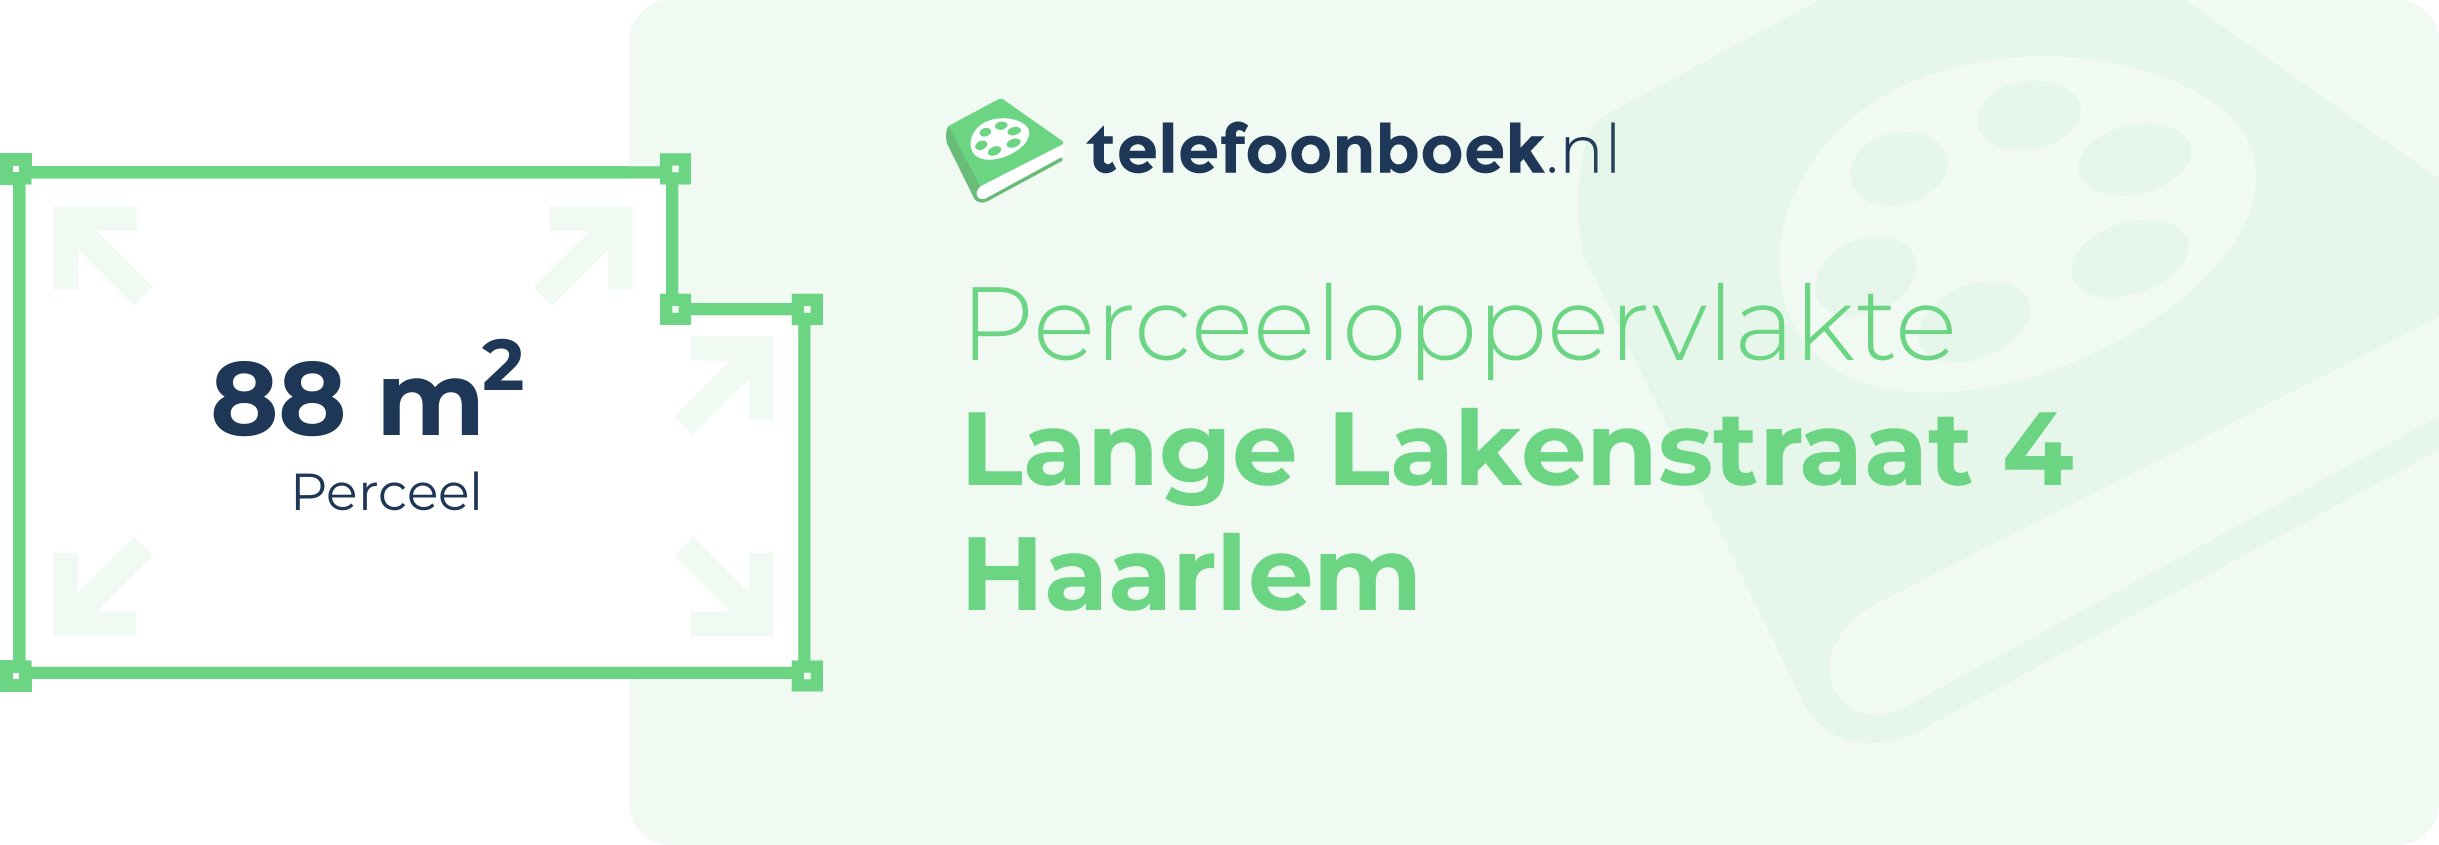 Perceeloppervlakte Lange Lakenstraat 4 Haarlem